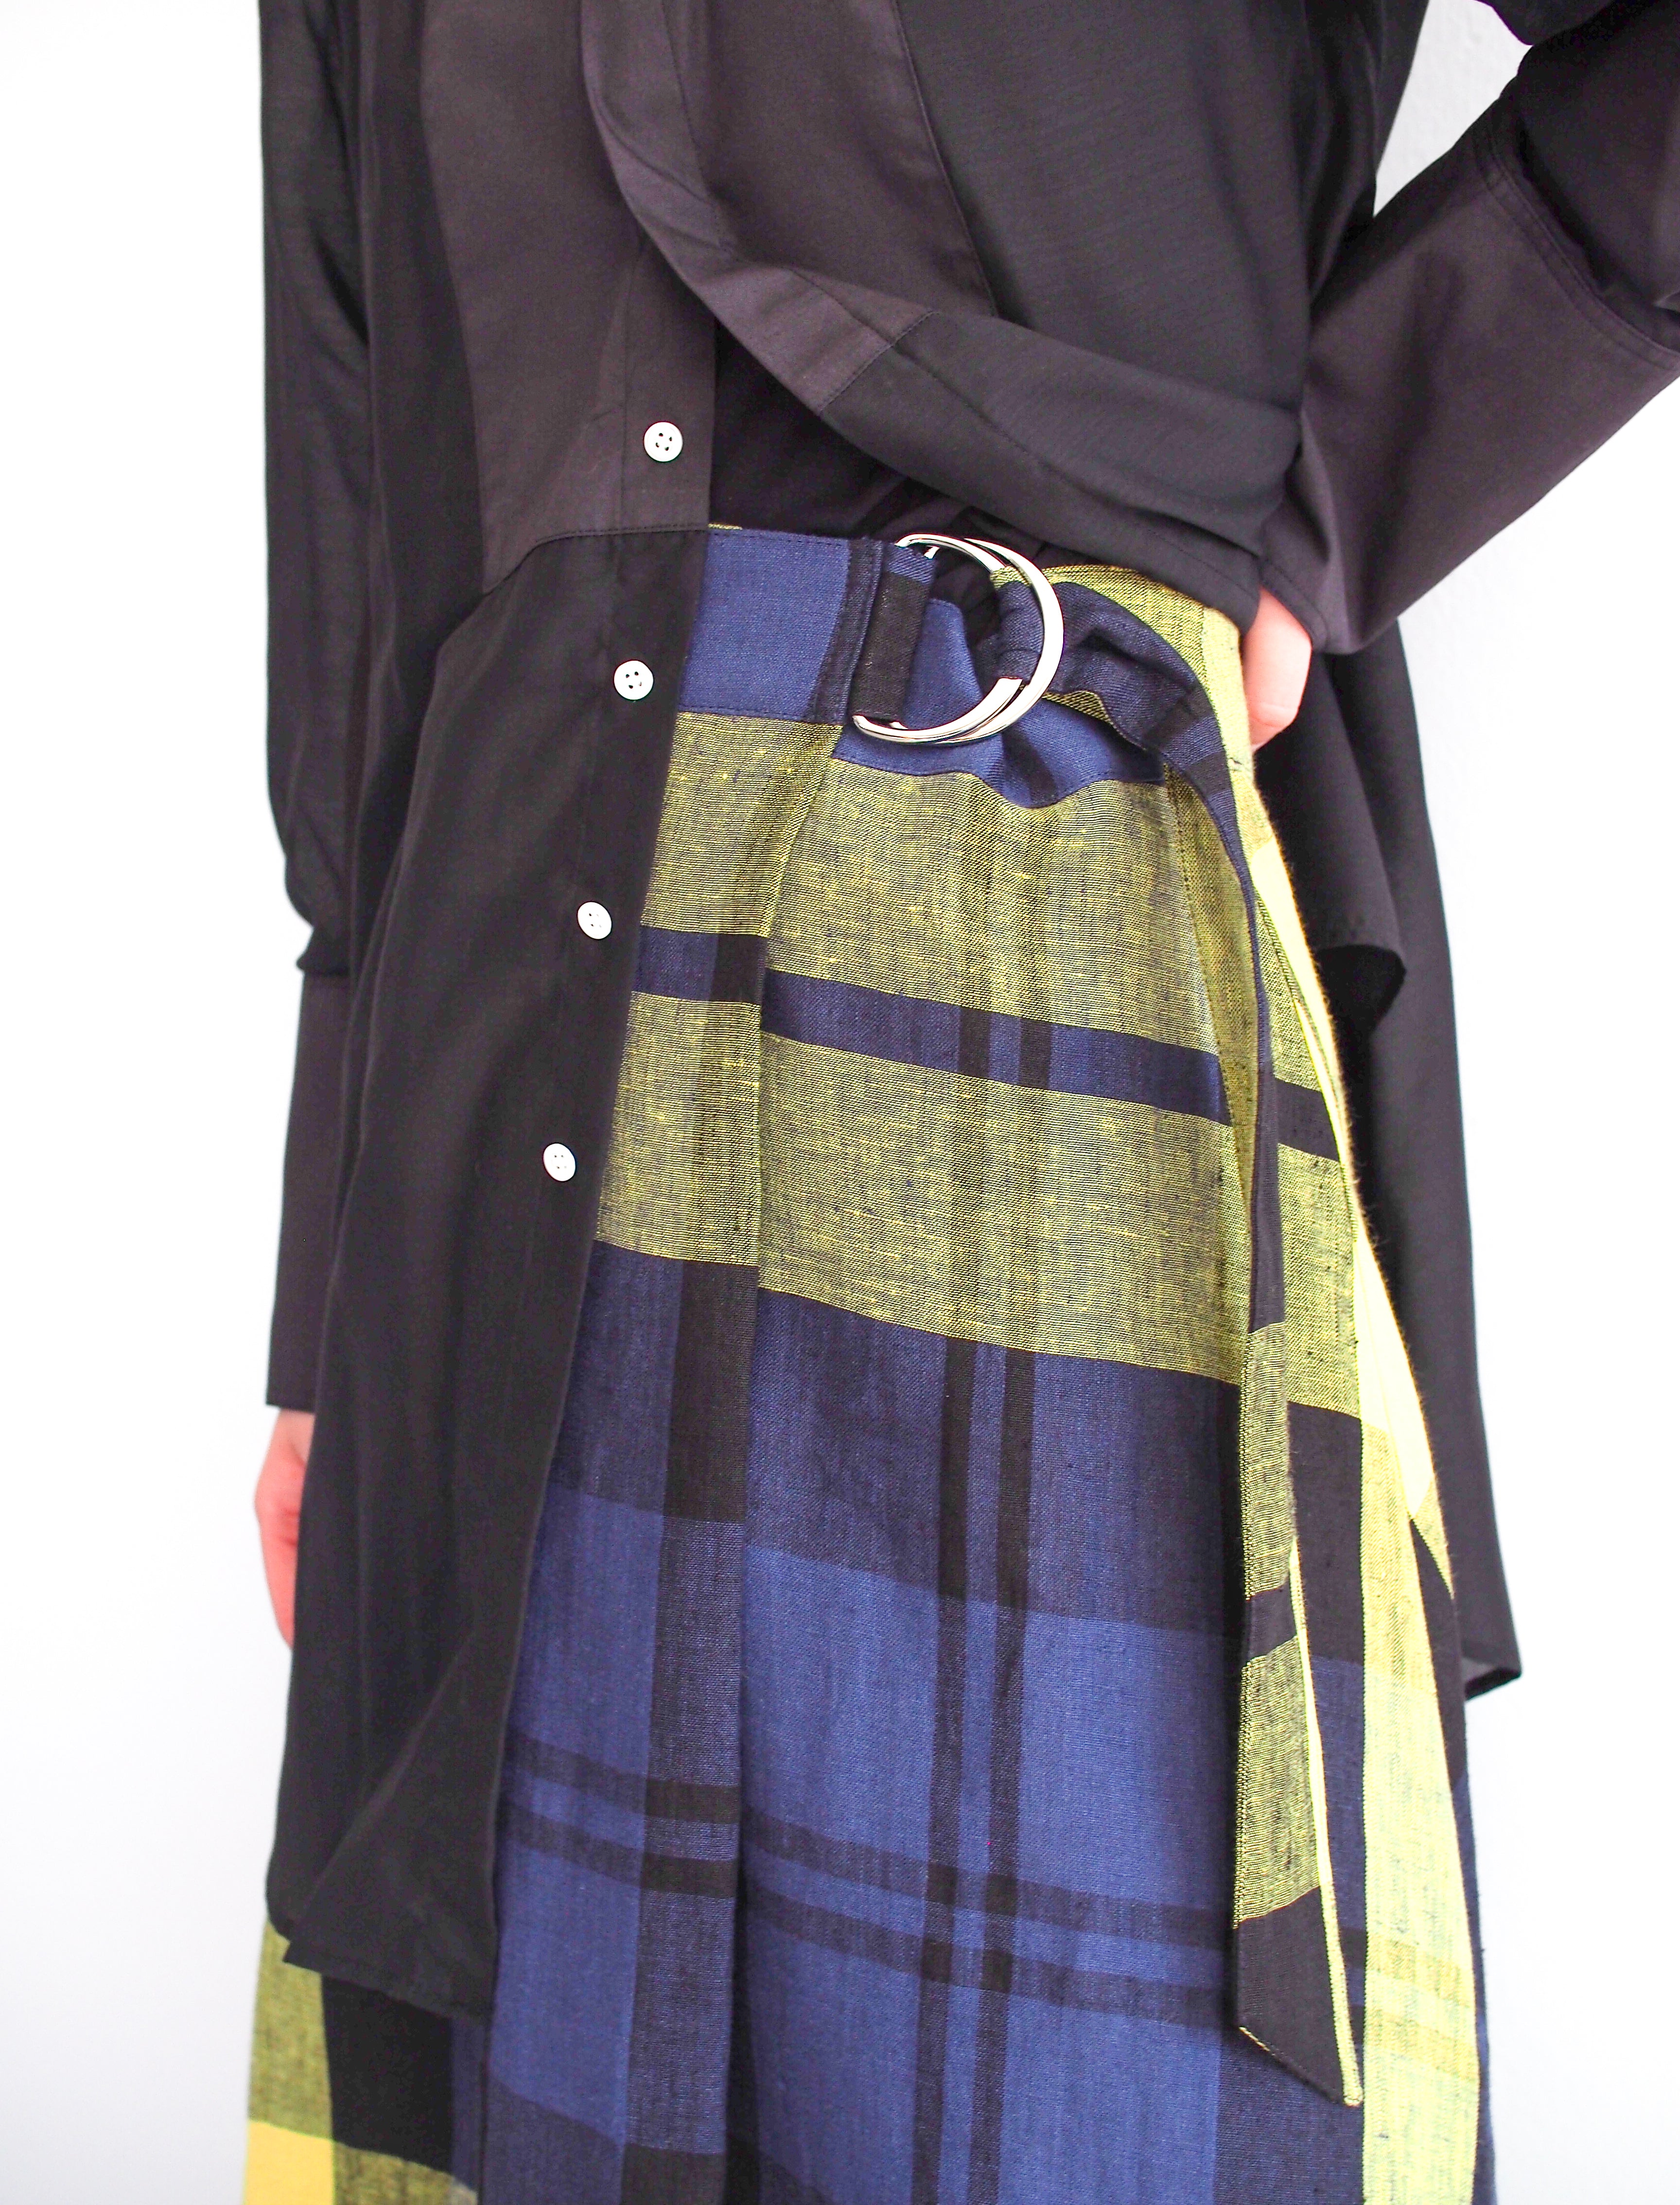 〔O’NEIL of DUBLIN〕Tartan Tuck Belt Skirt / MAX INISHBIGGLE / 8 / 158cm